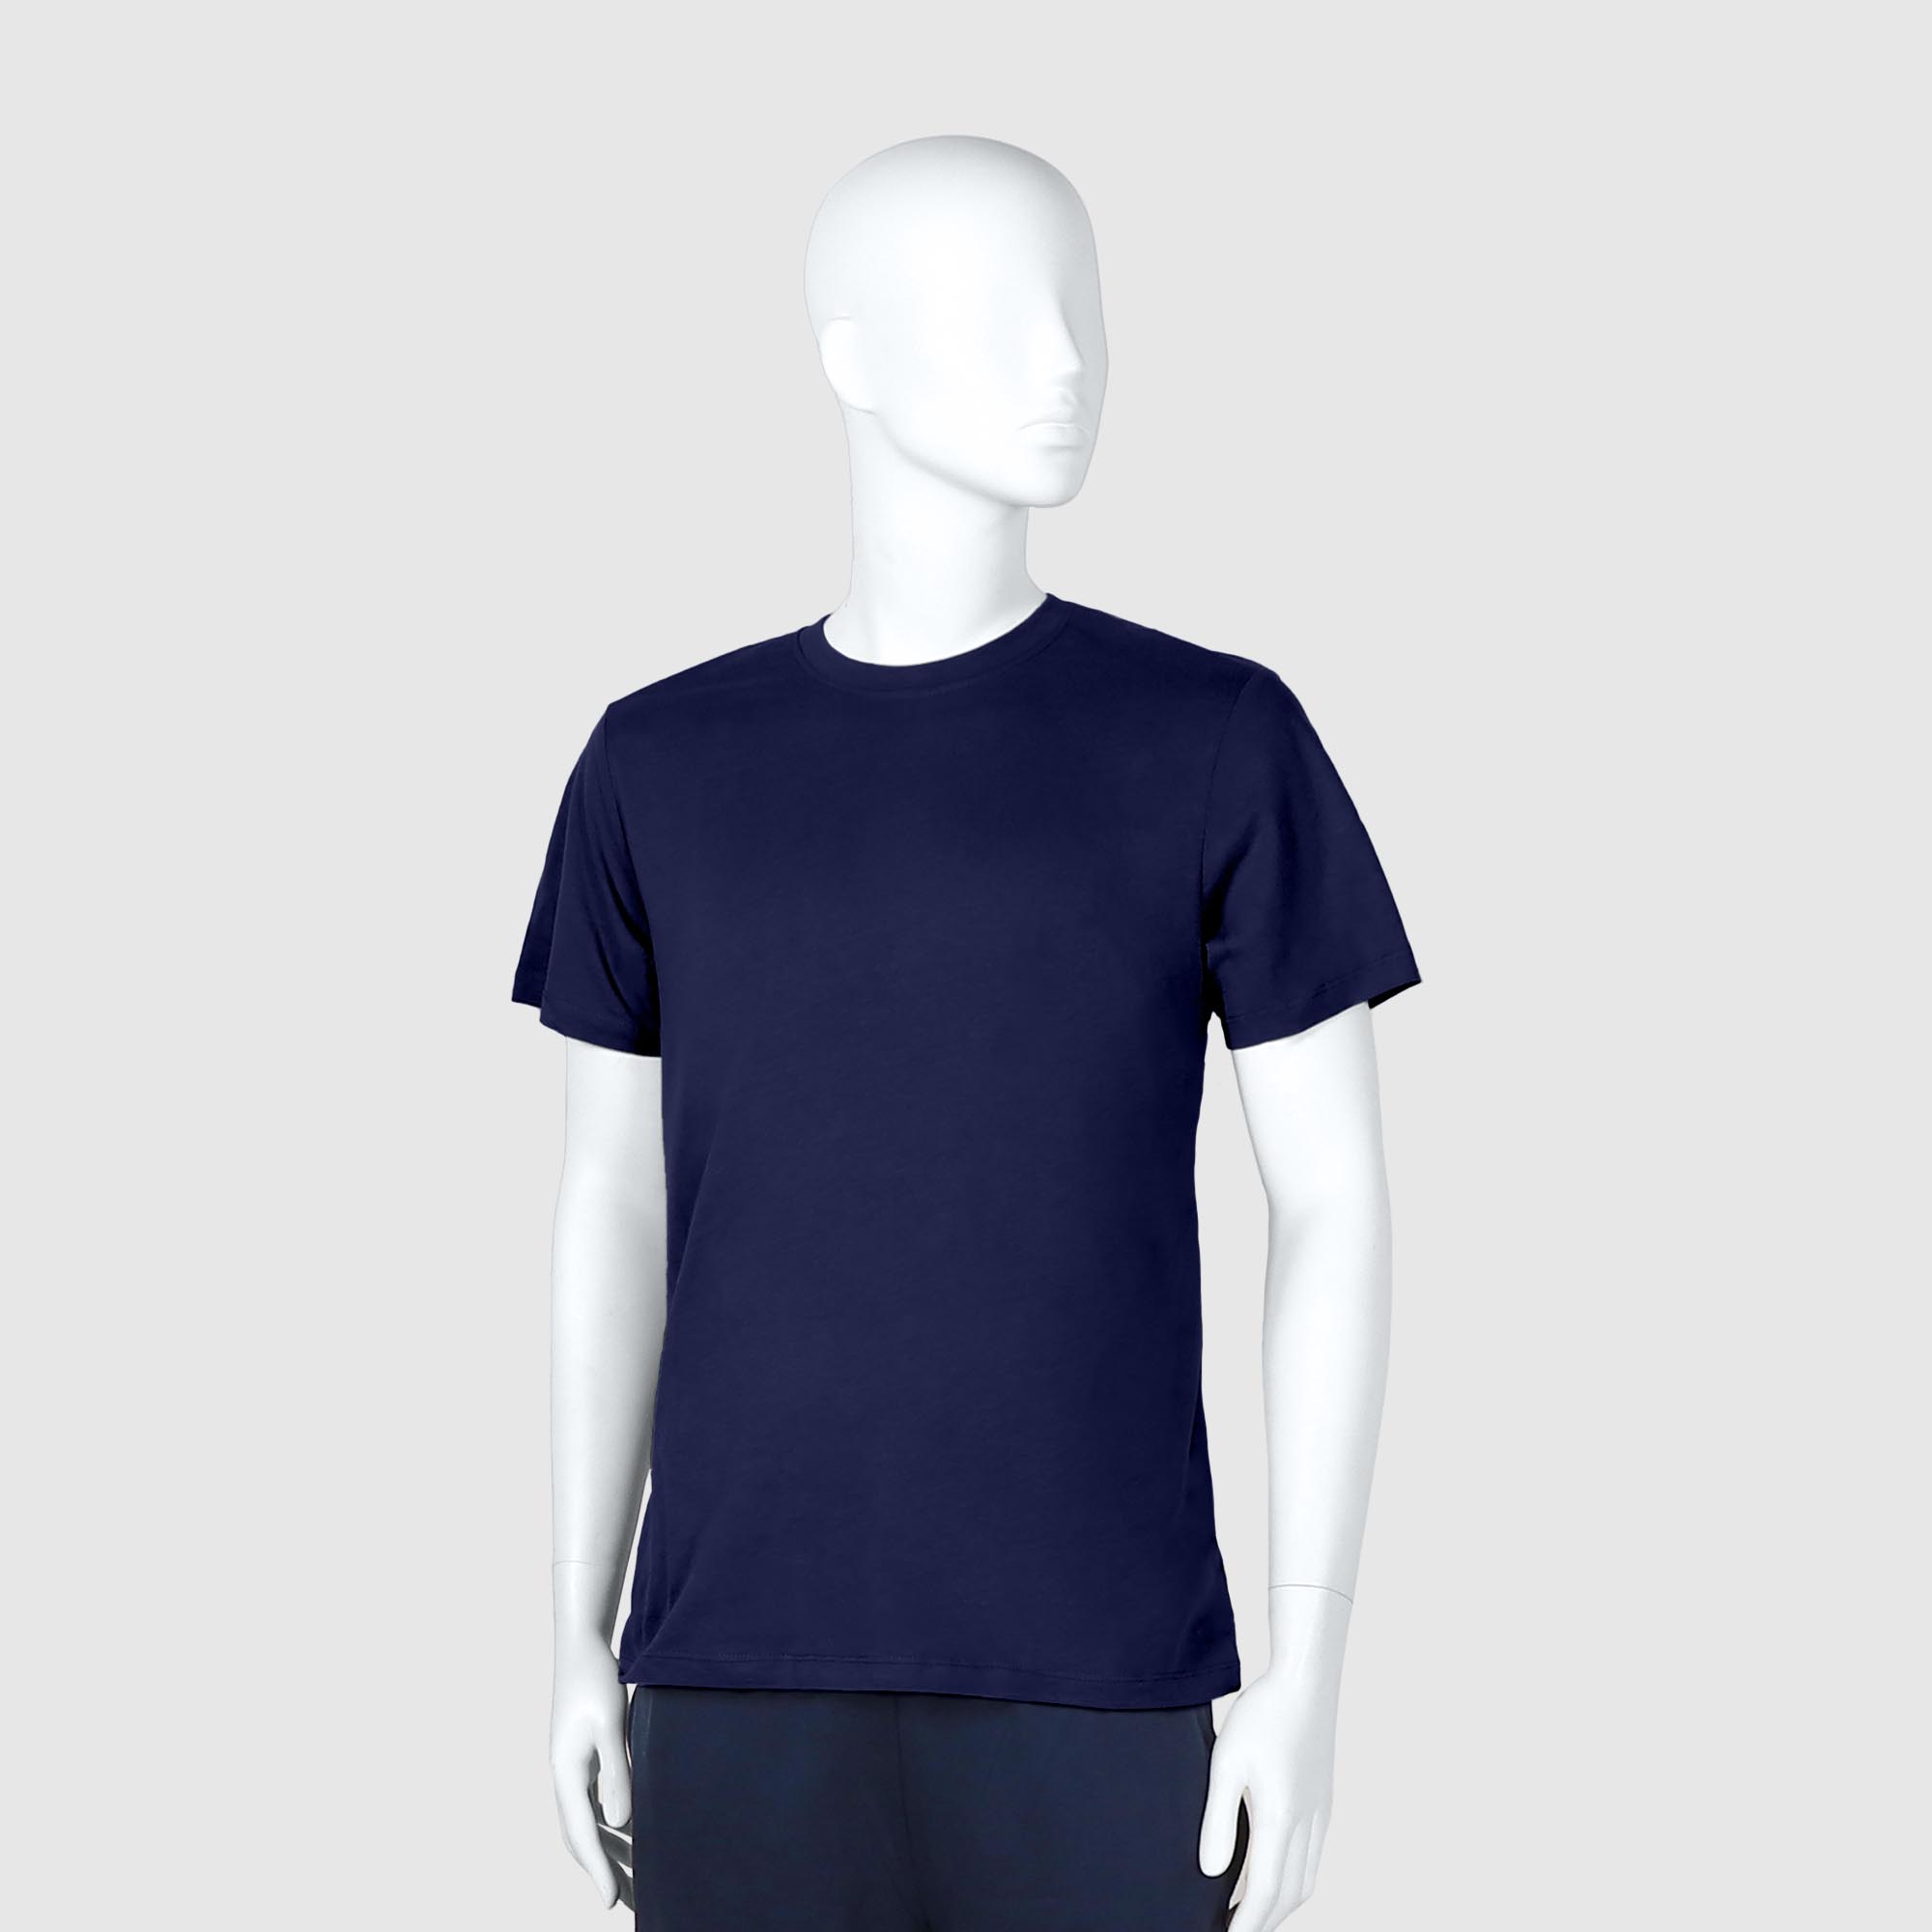 Мужская футболка Diva Teks синяя (DTD-05), цвет синий, размер 52-54 - фото 1